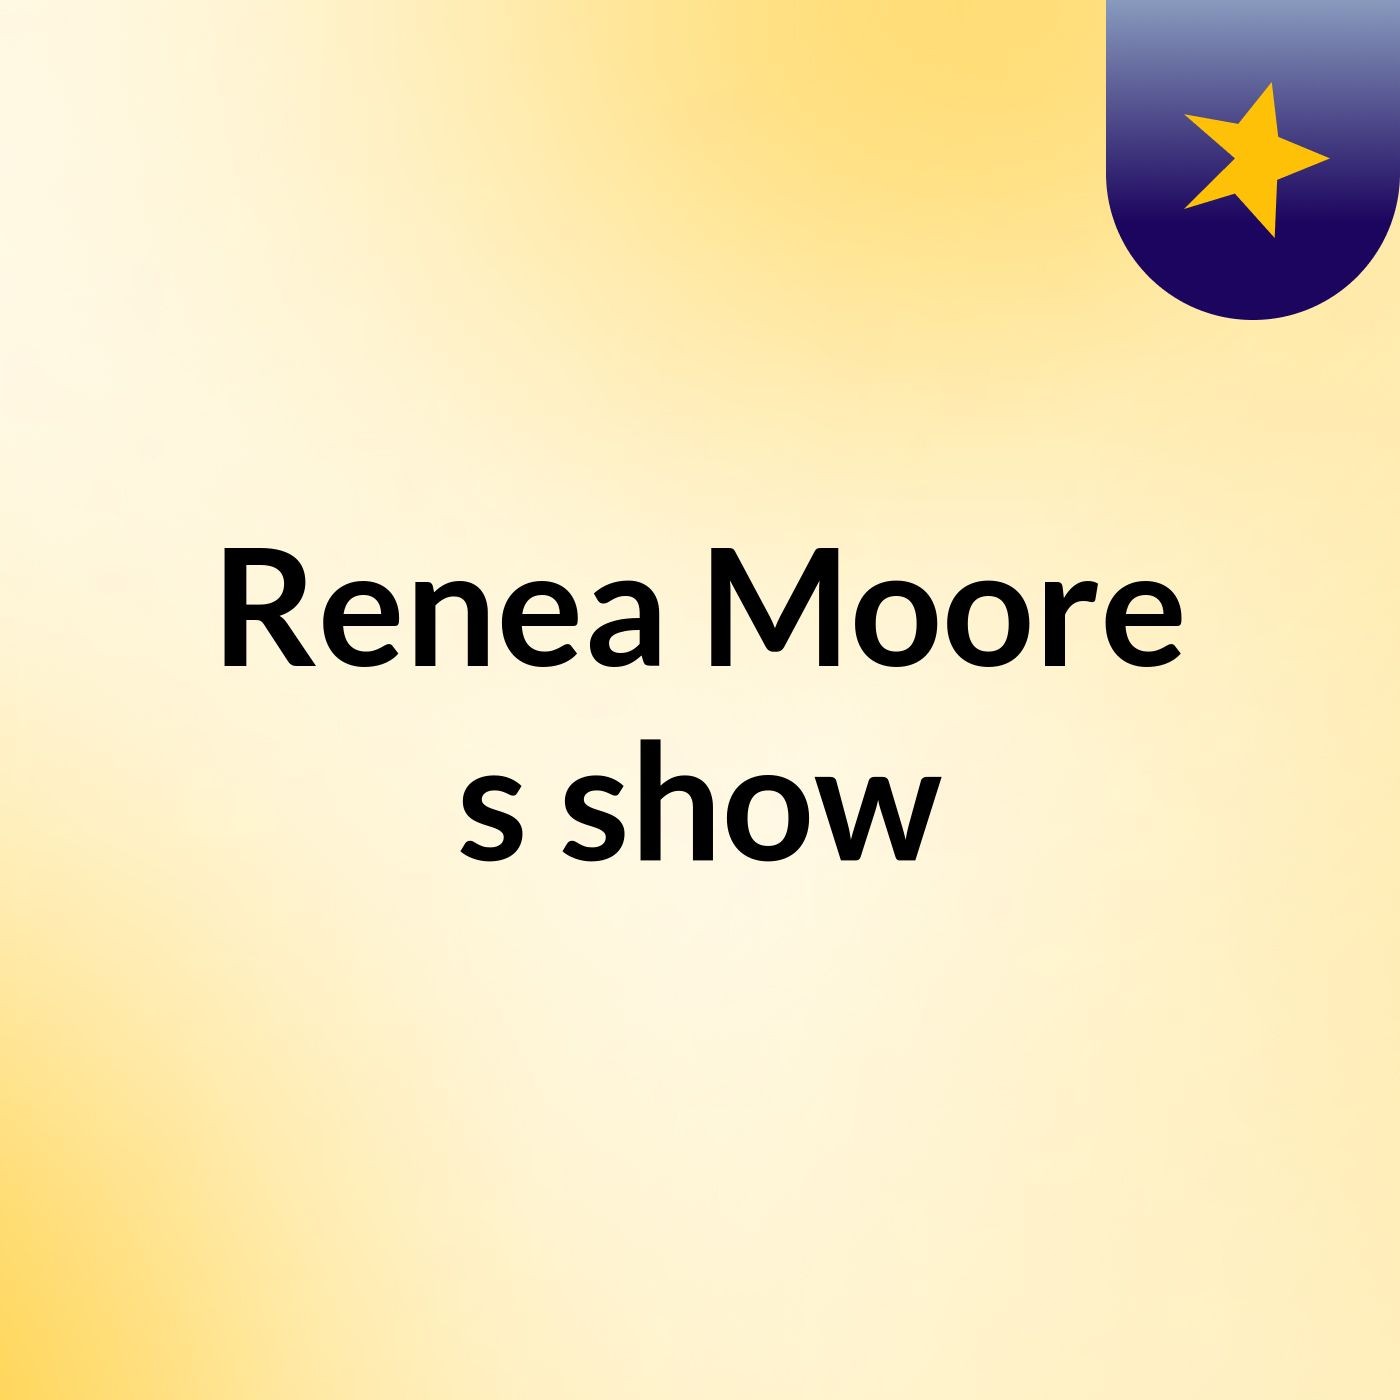 Renea Moore's show